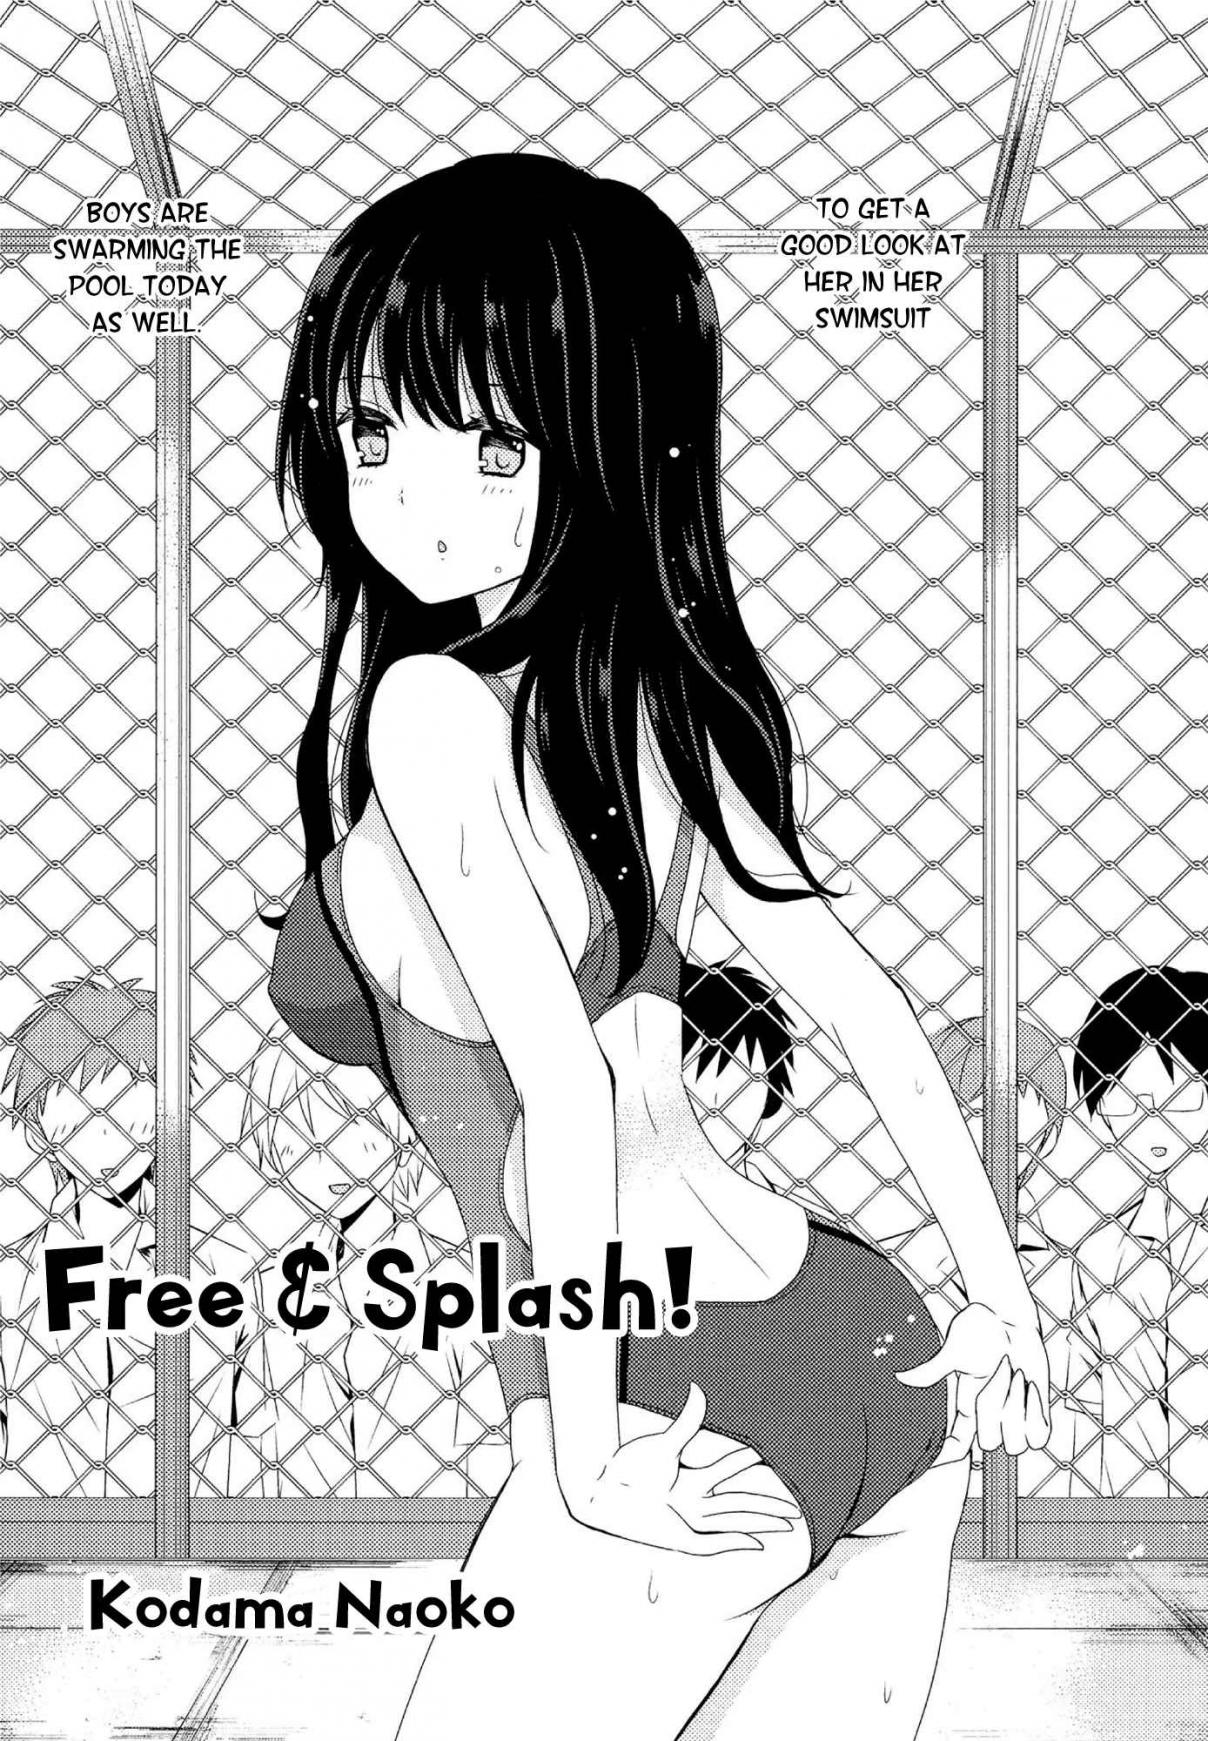 Kimashi! Ch. 2 Free & Splash!